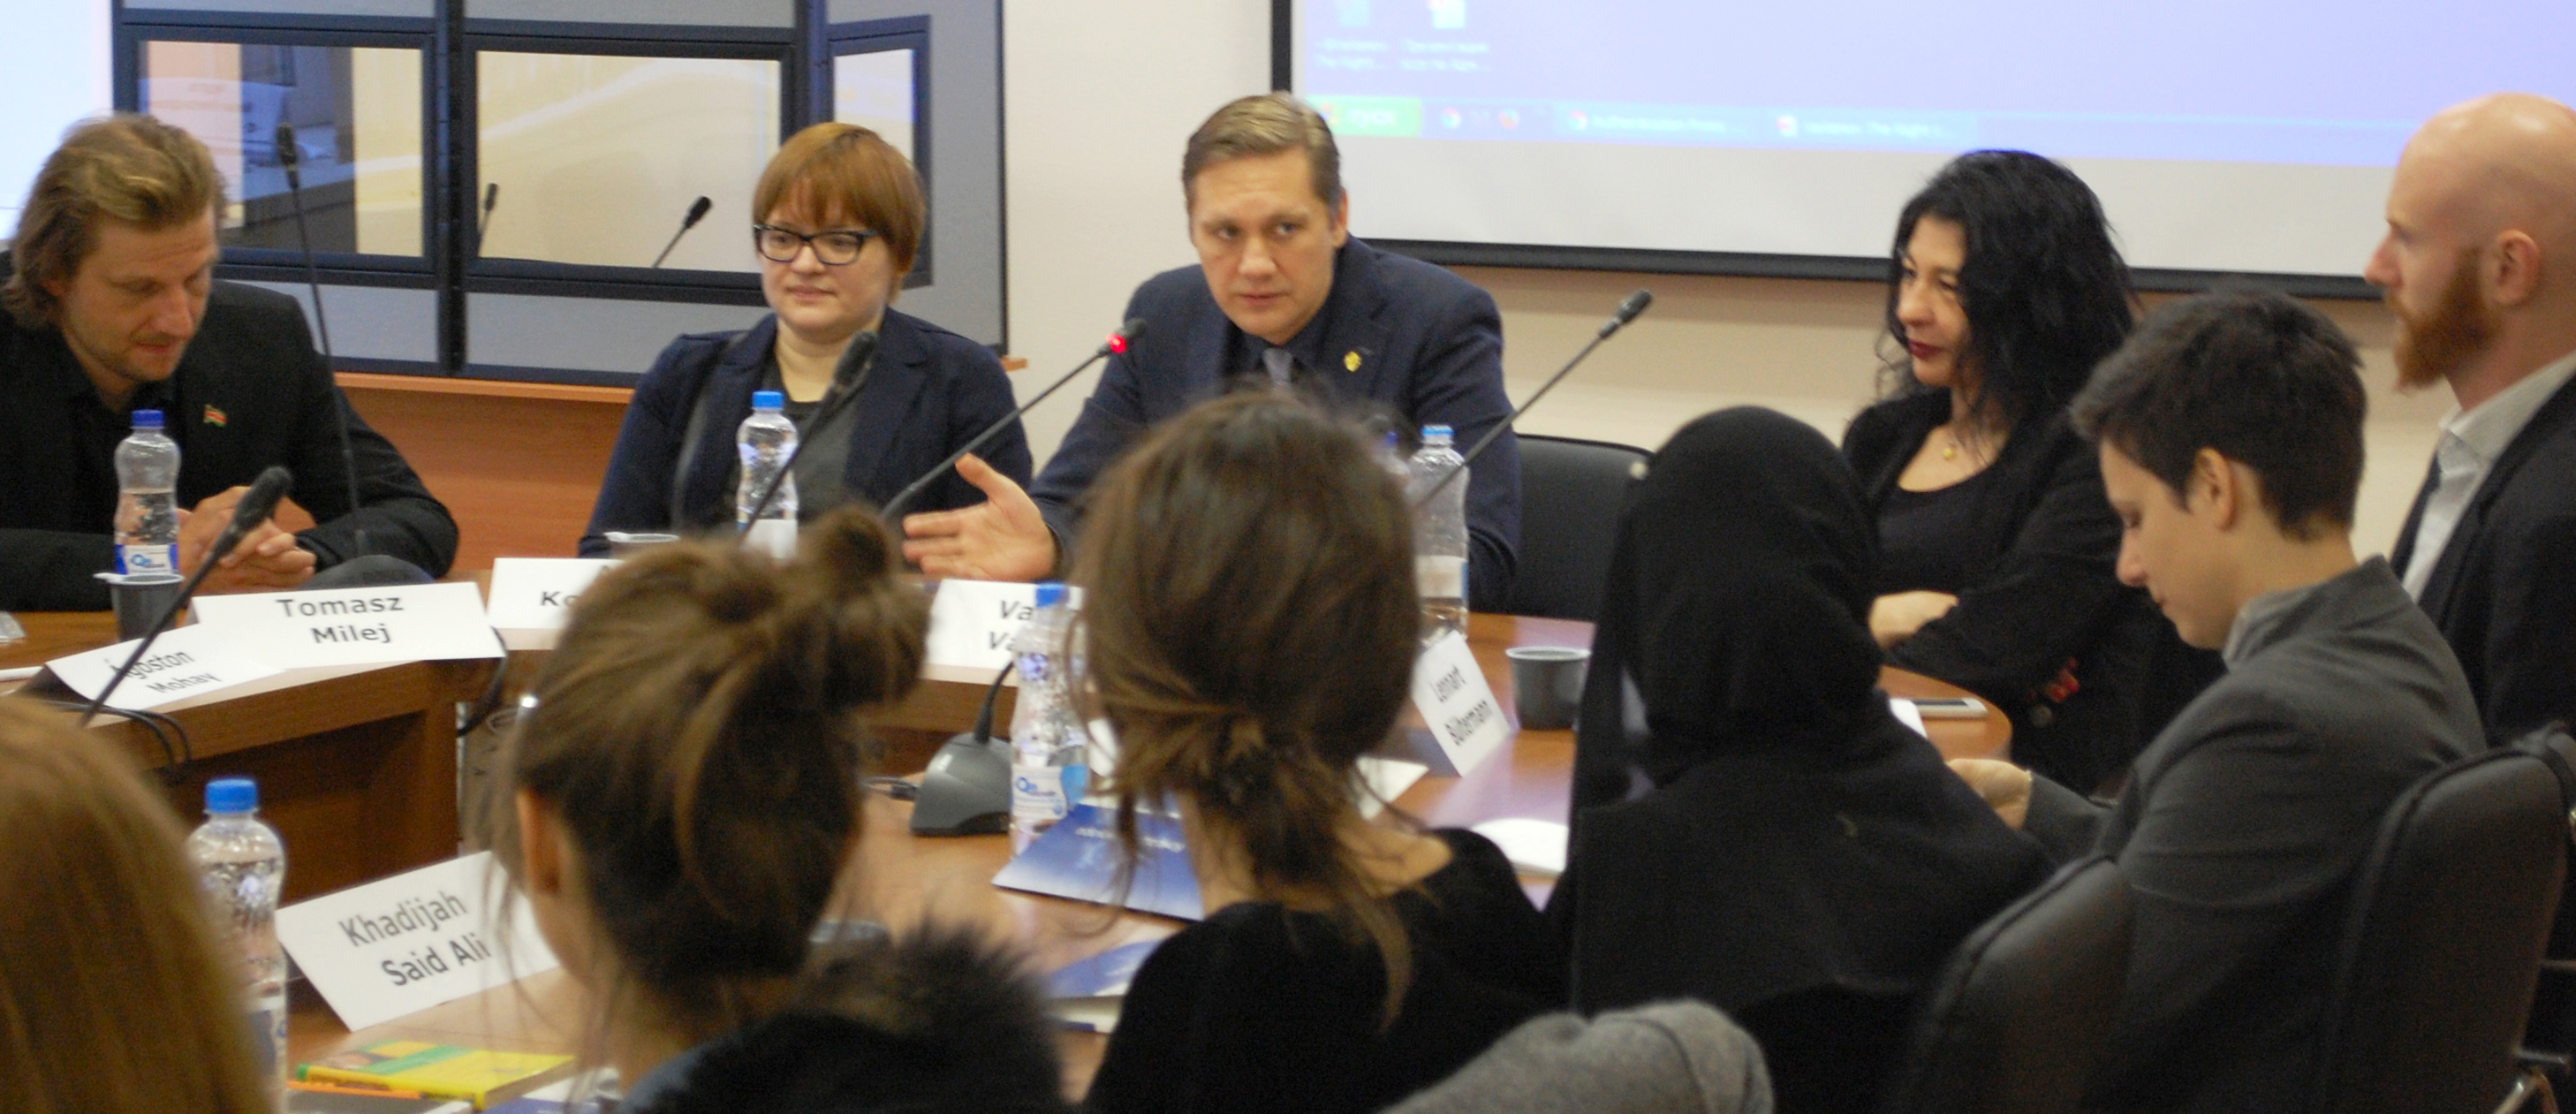 Vaidotas Vaičaitis participates in a Constitutional Law Seminar in Moscow, Russia, 2016.